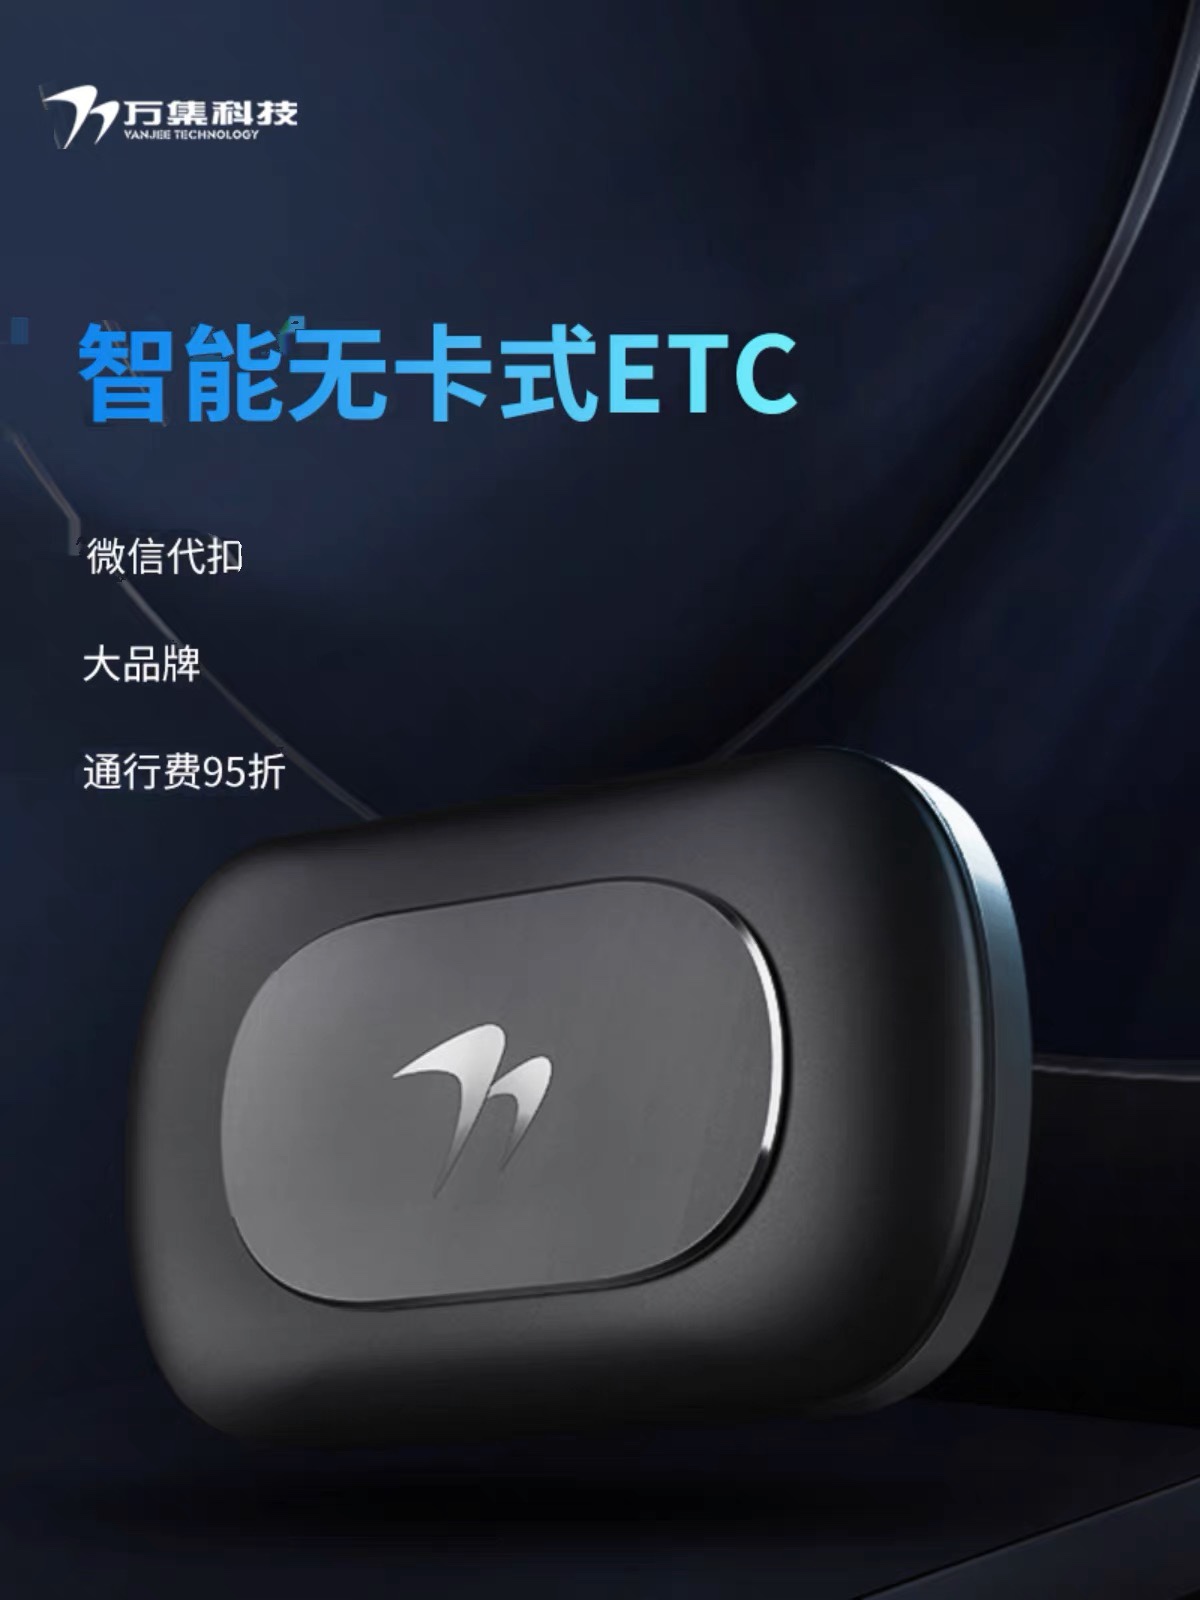 【汽车专用】北京速通卡ETC第四代智能无卡式etc全国通用微信代扣